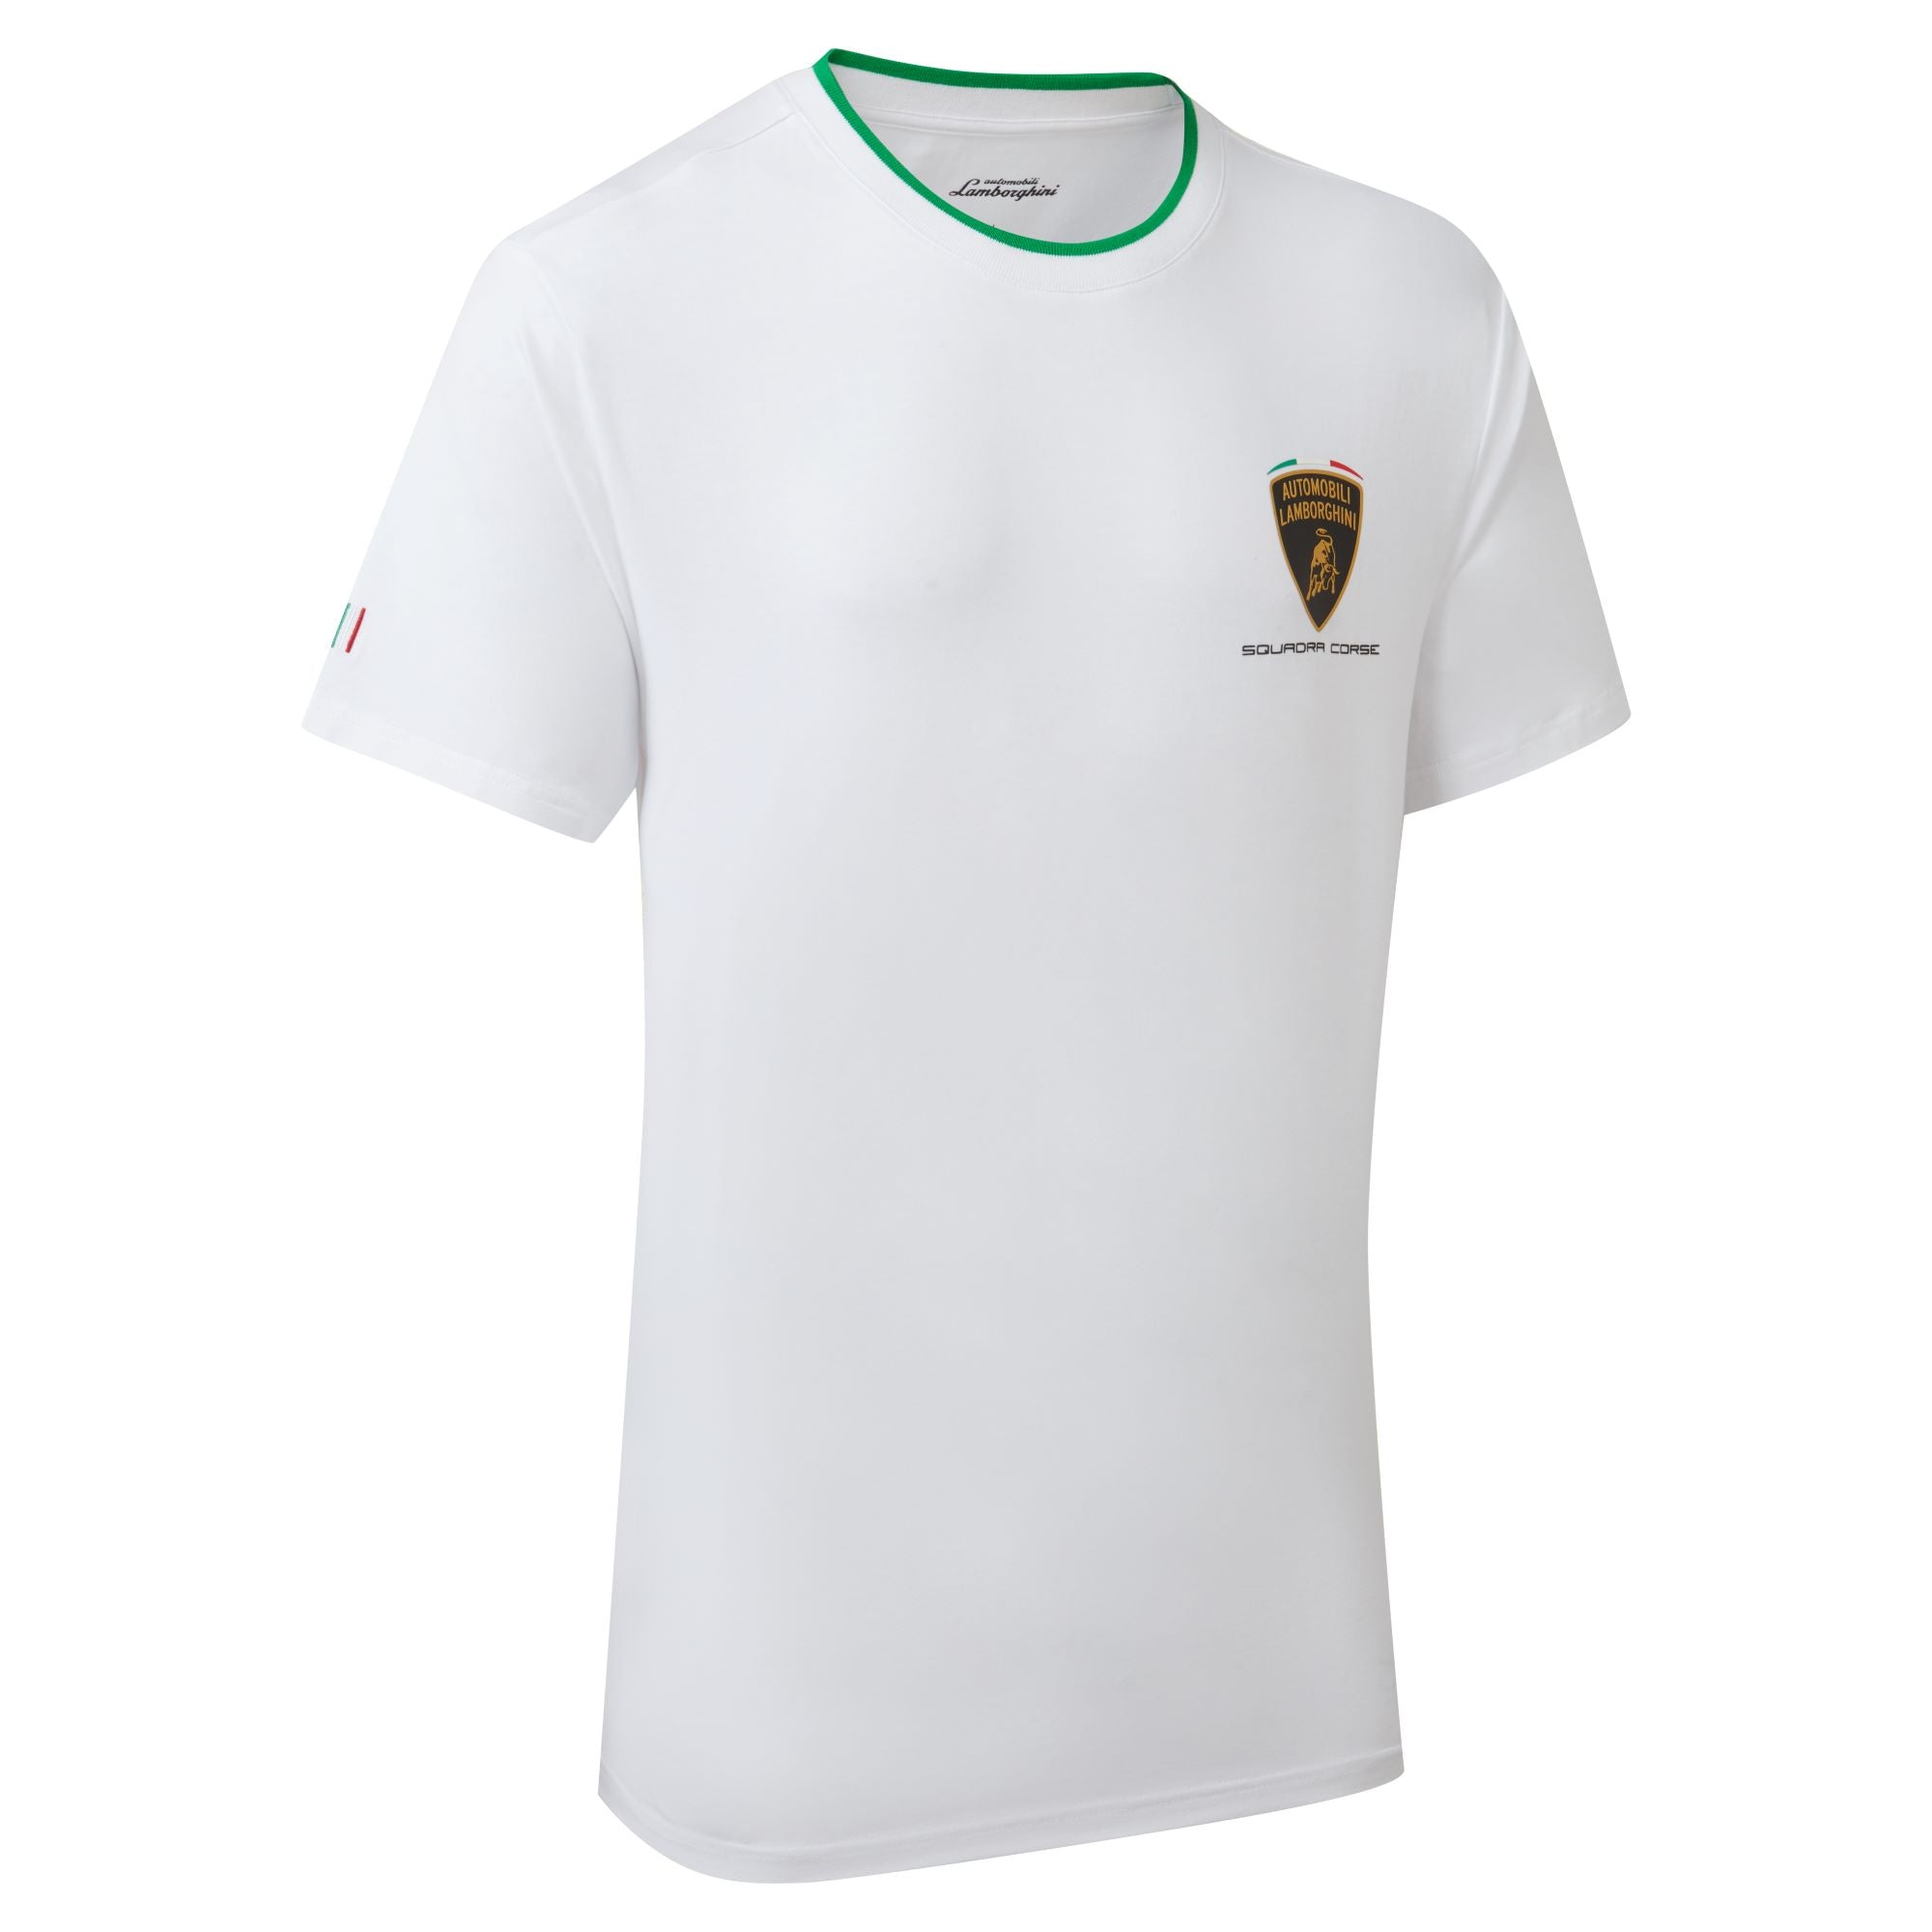 Lamborghini Squadra Corse Men's Travel T-Shirt White